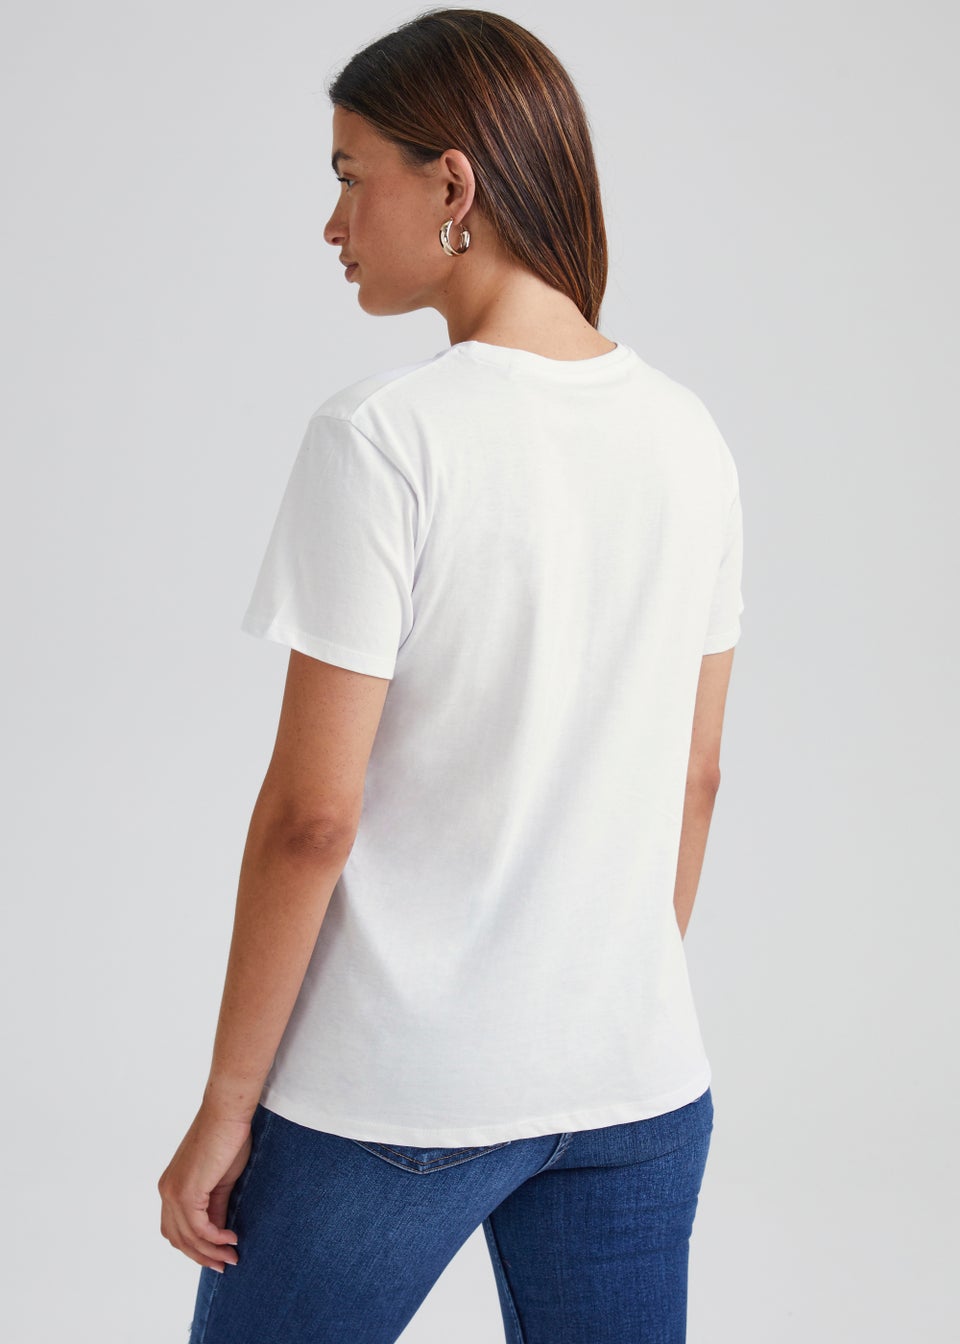 Flower Women's White Short Sleeve Graphic T Shirt For Flower